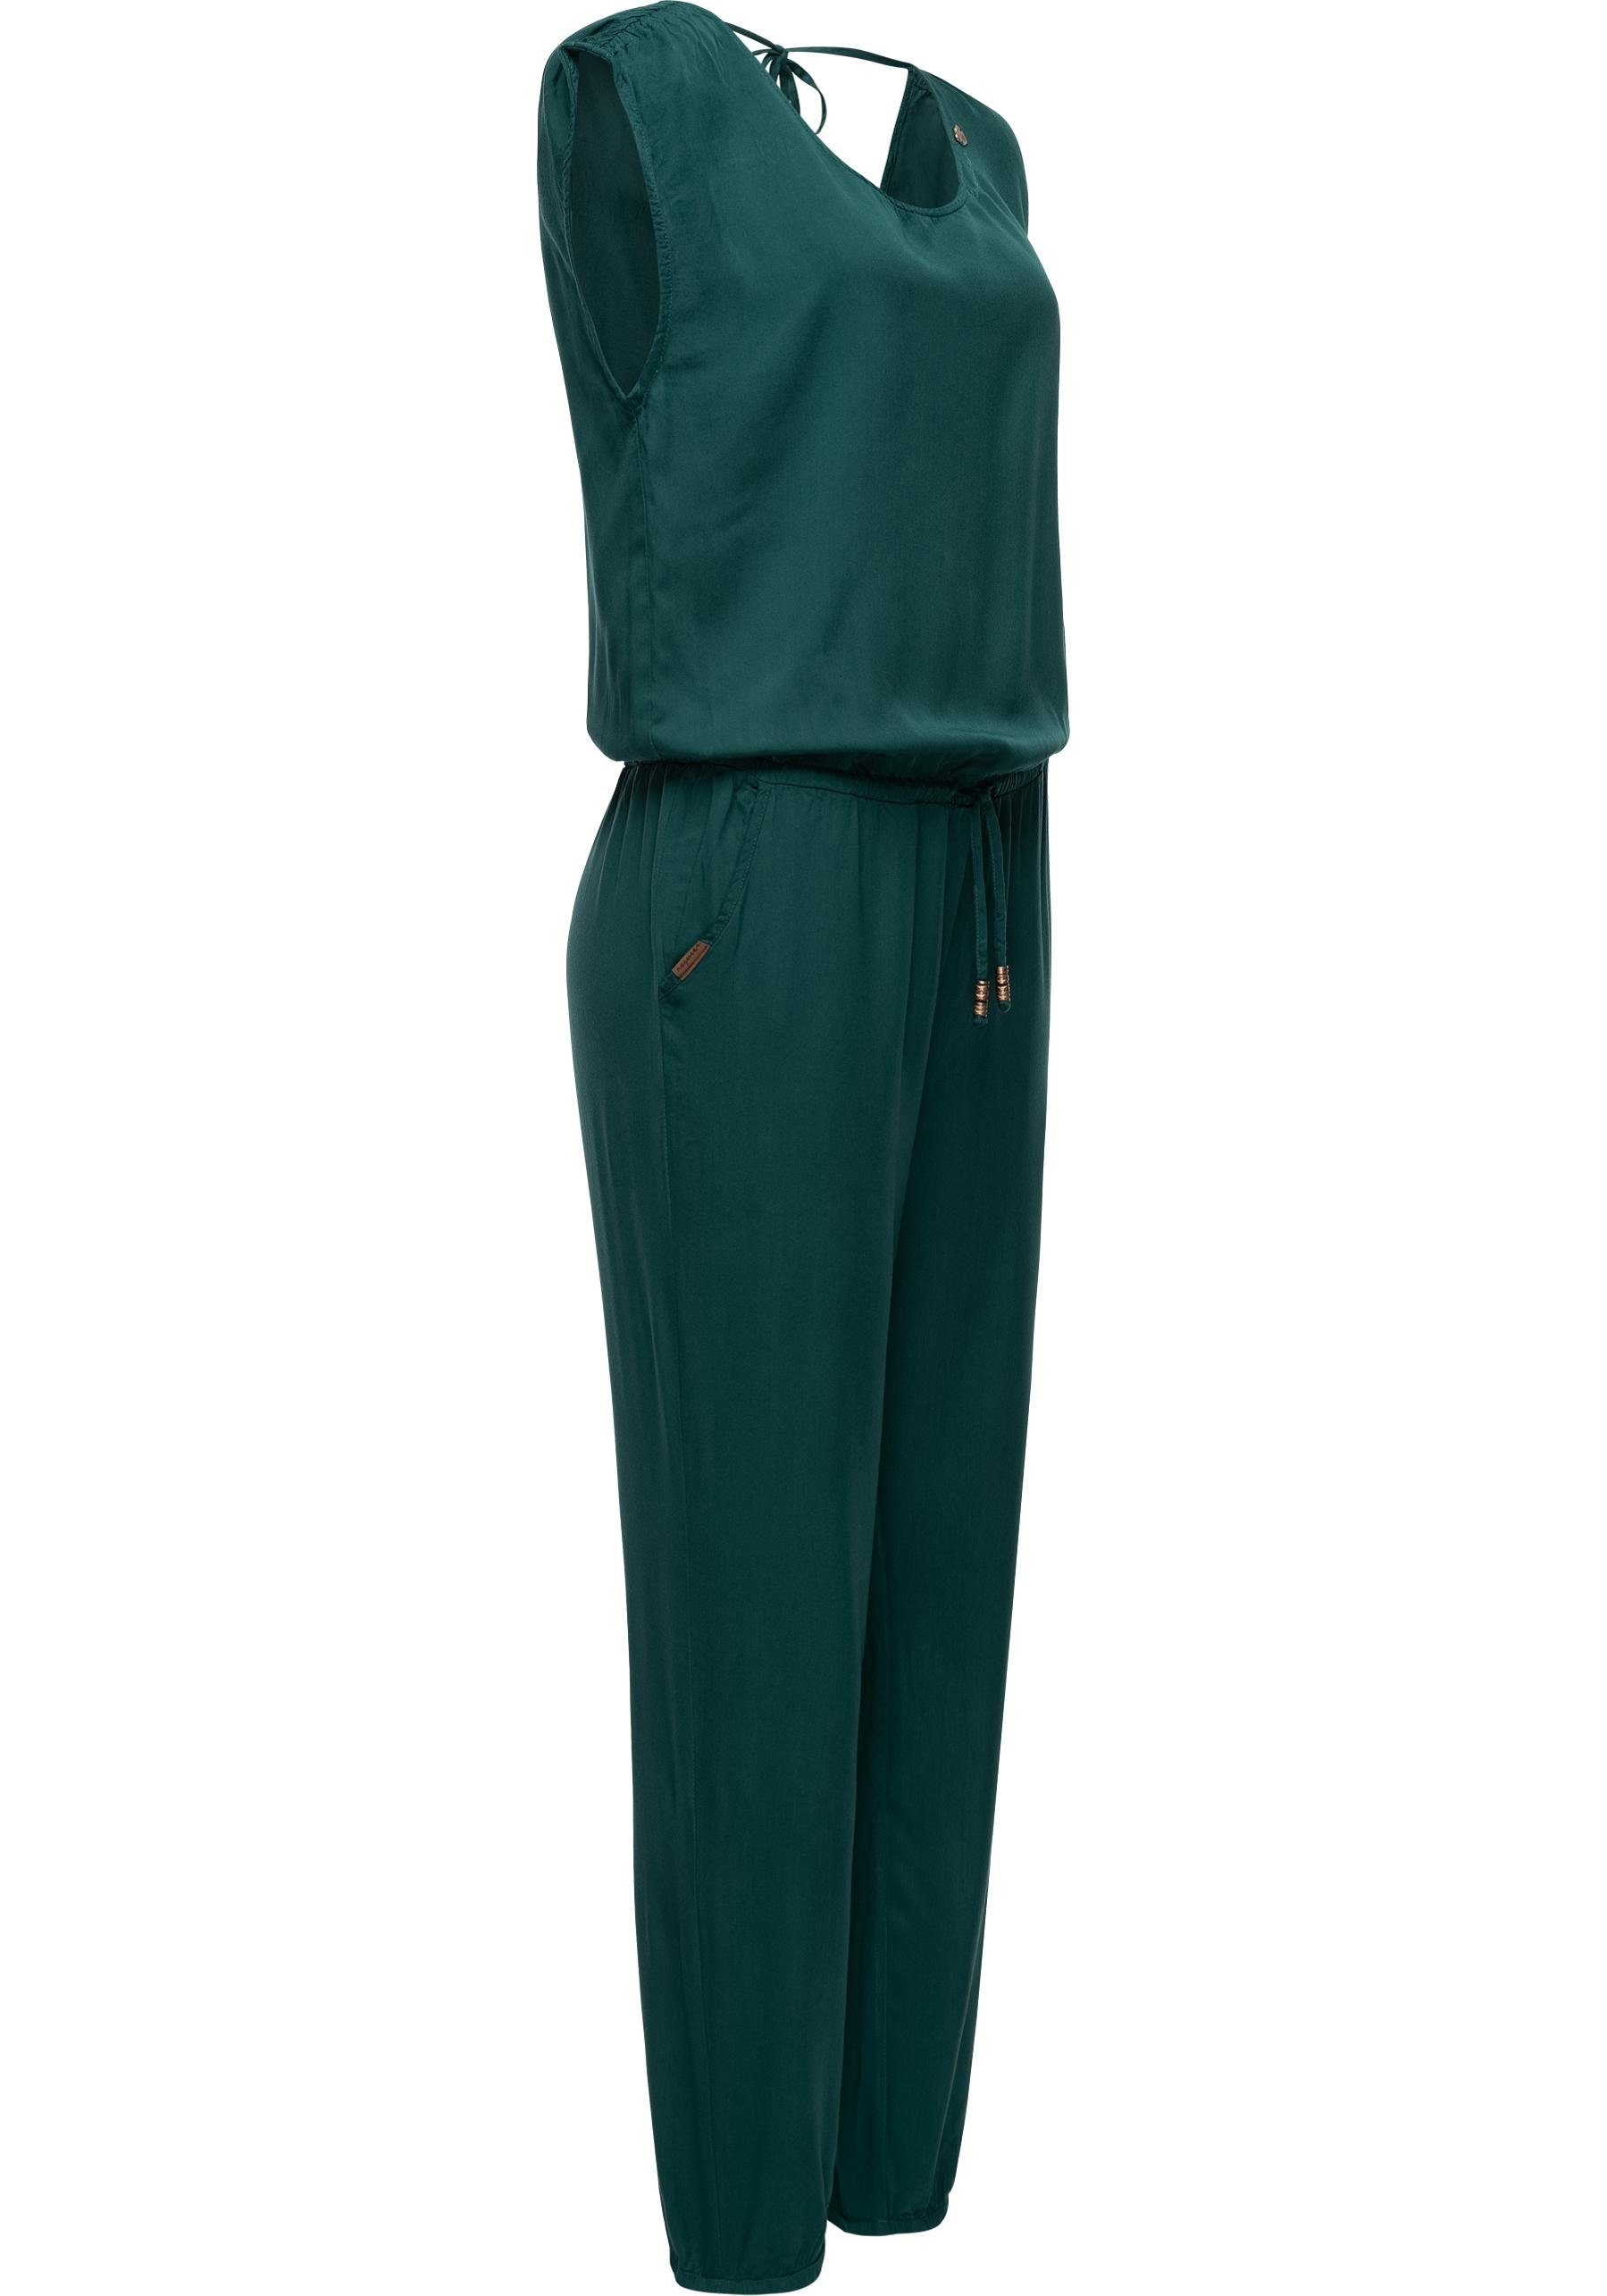 Ragwear Damen langer Bindeband Jumpsuit dunkelgrün schicker, mit Overall Noveel